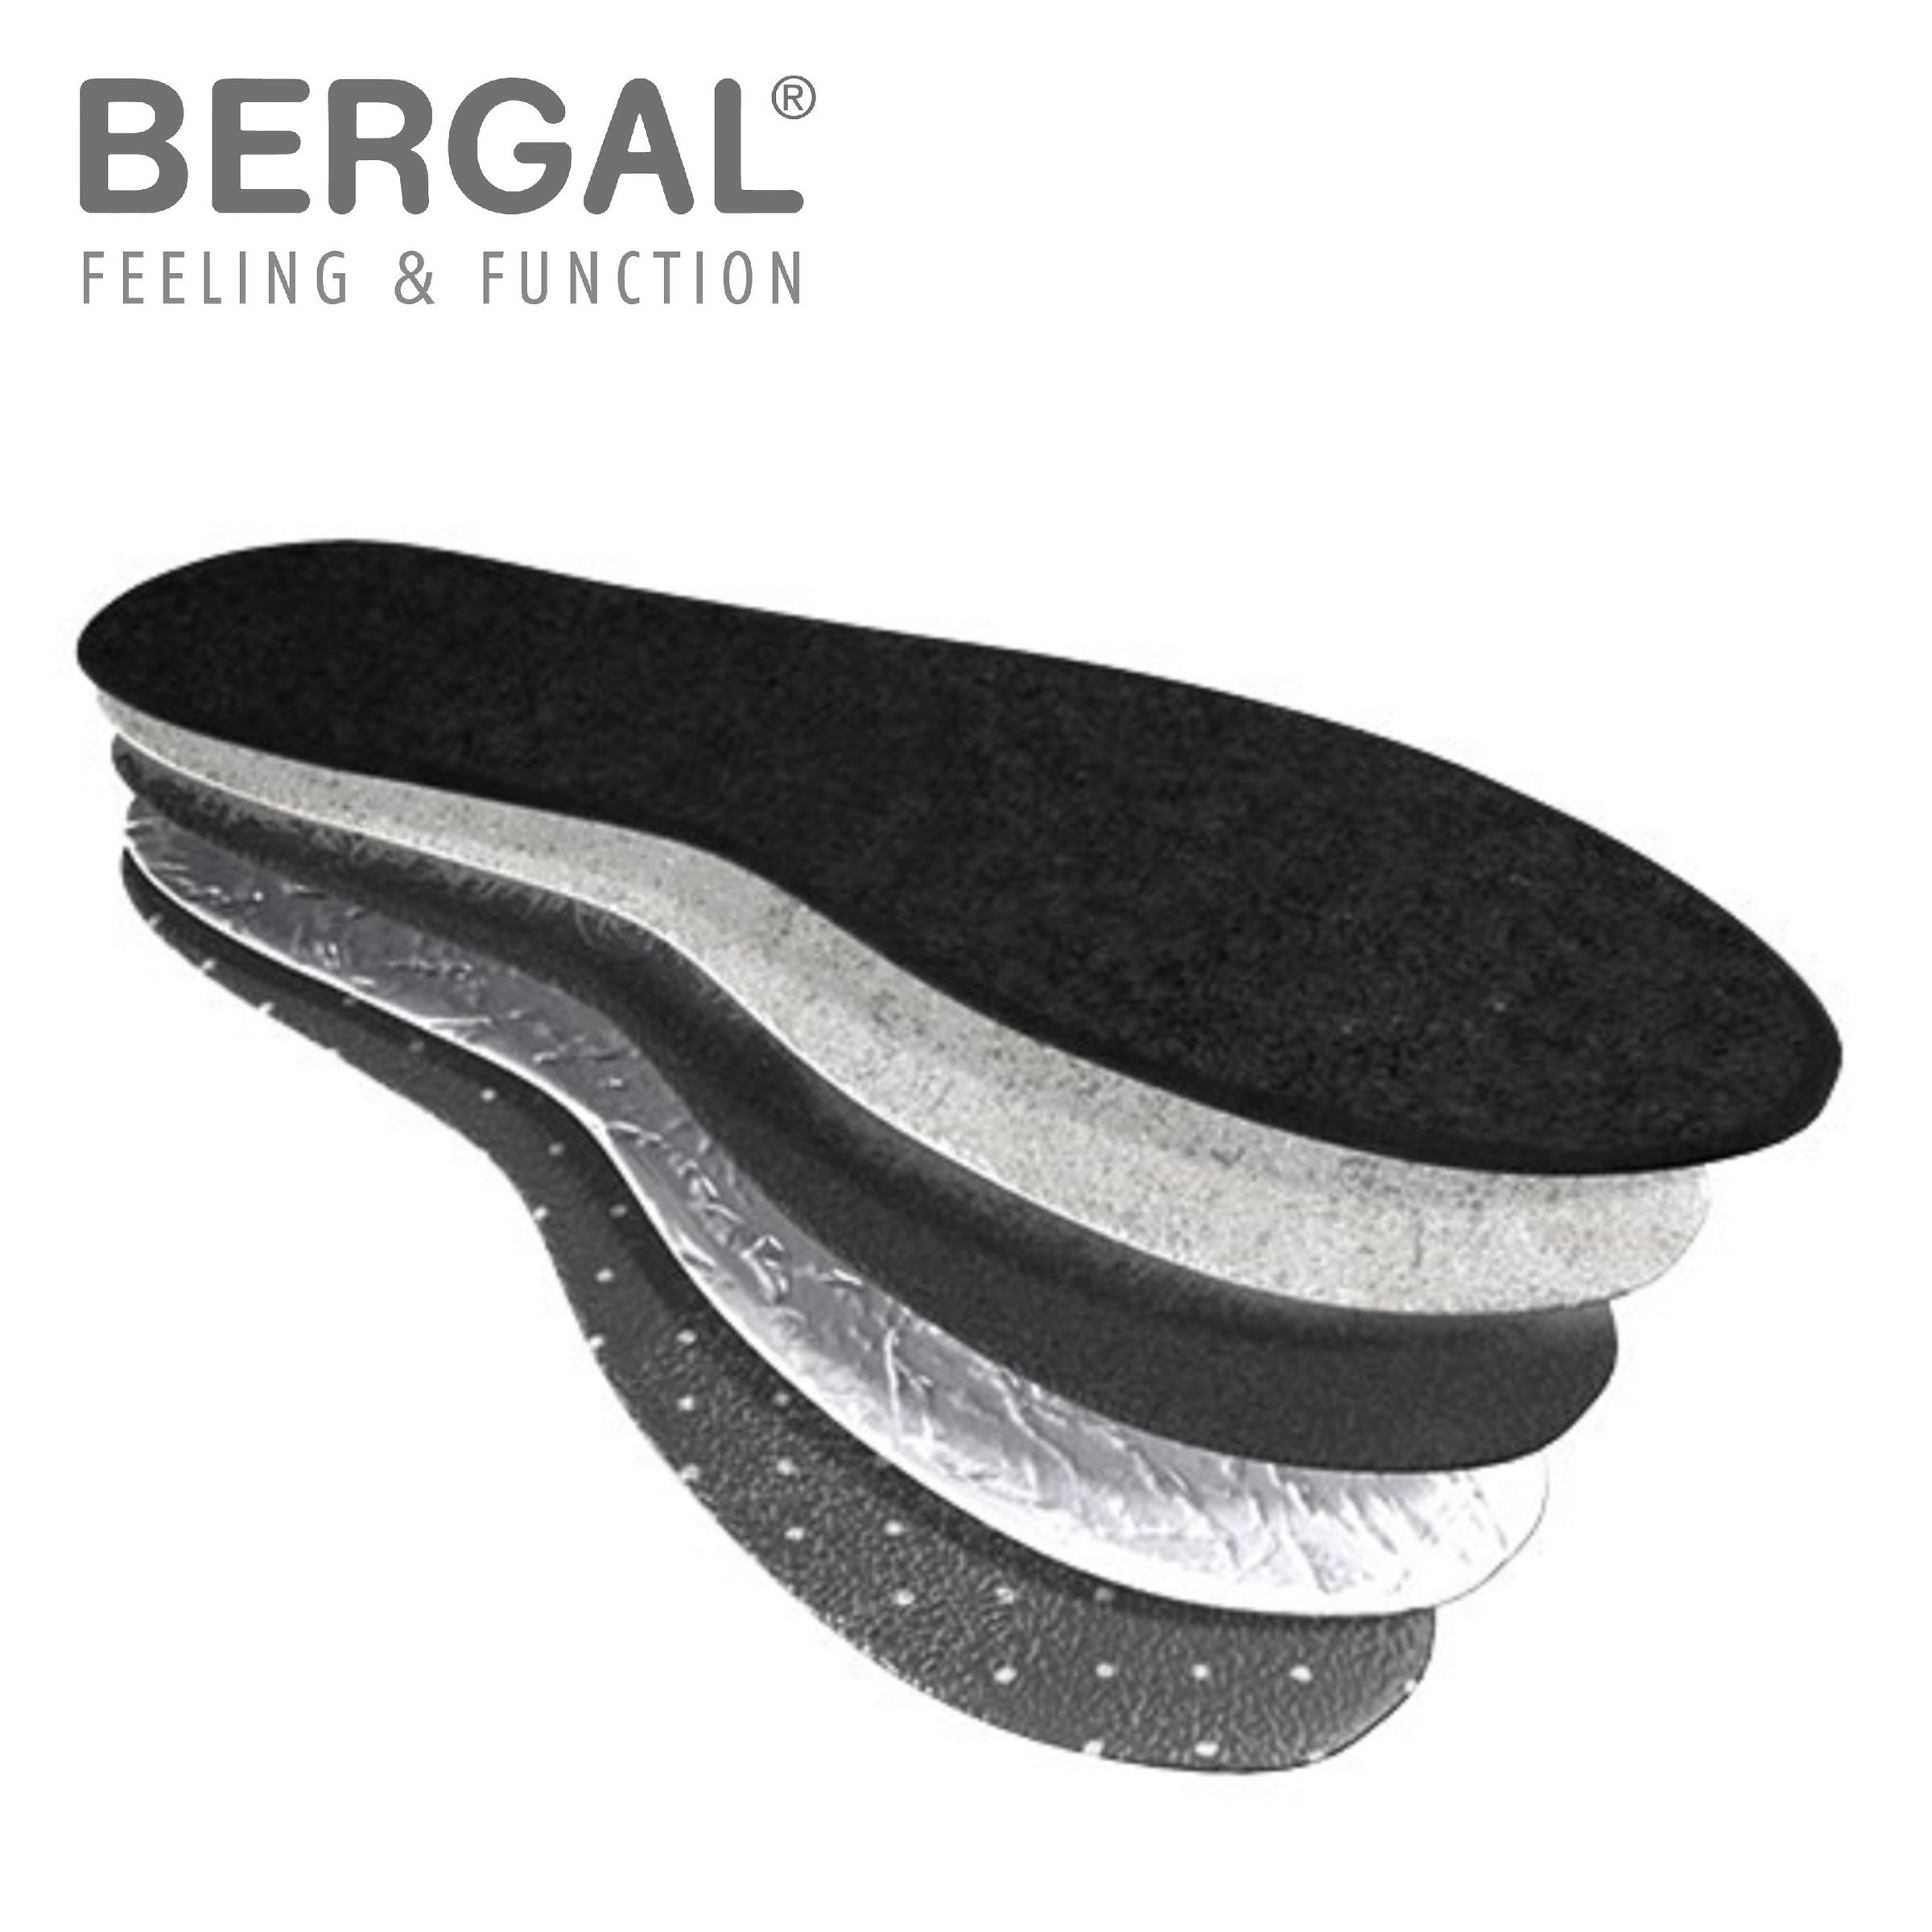 Bergal 1 Paar Thermo Soft wärmende Winter Schuh-Einlage, Einlegesohle mit High-Tech-Funktionsfaser PrimaLoft 